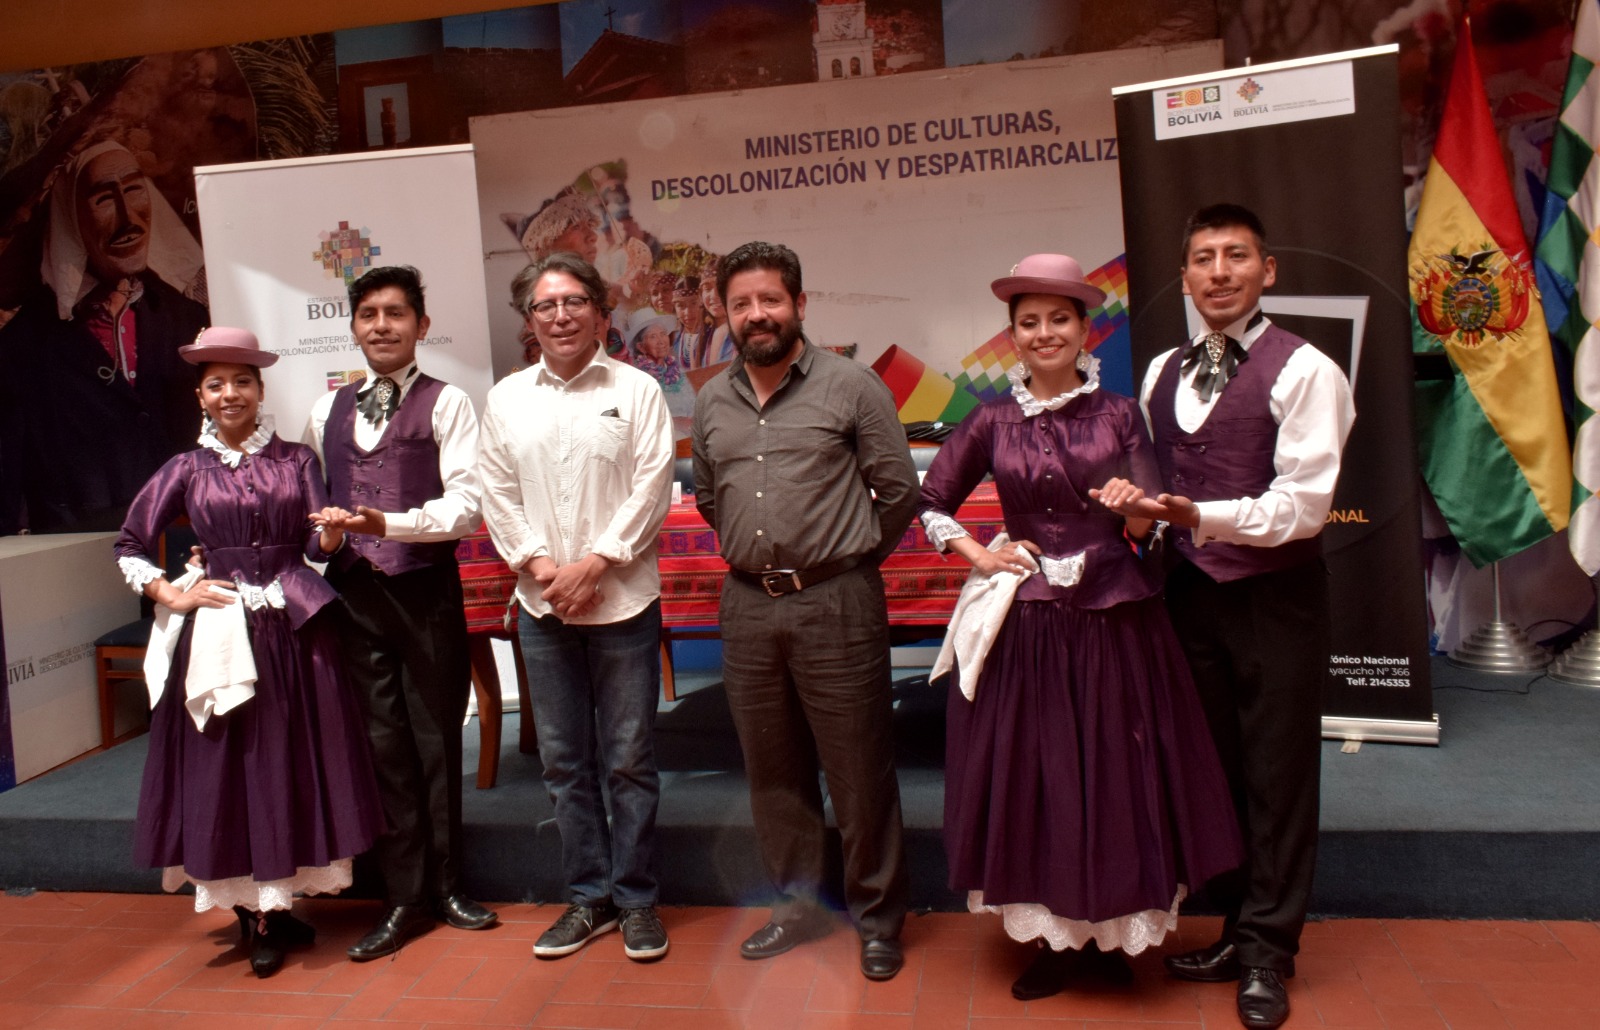 La Orquesta Sinfónica Nacional y el Ballet Folklórico de La Paz promueven la descolonización a través de la danza y la música